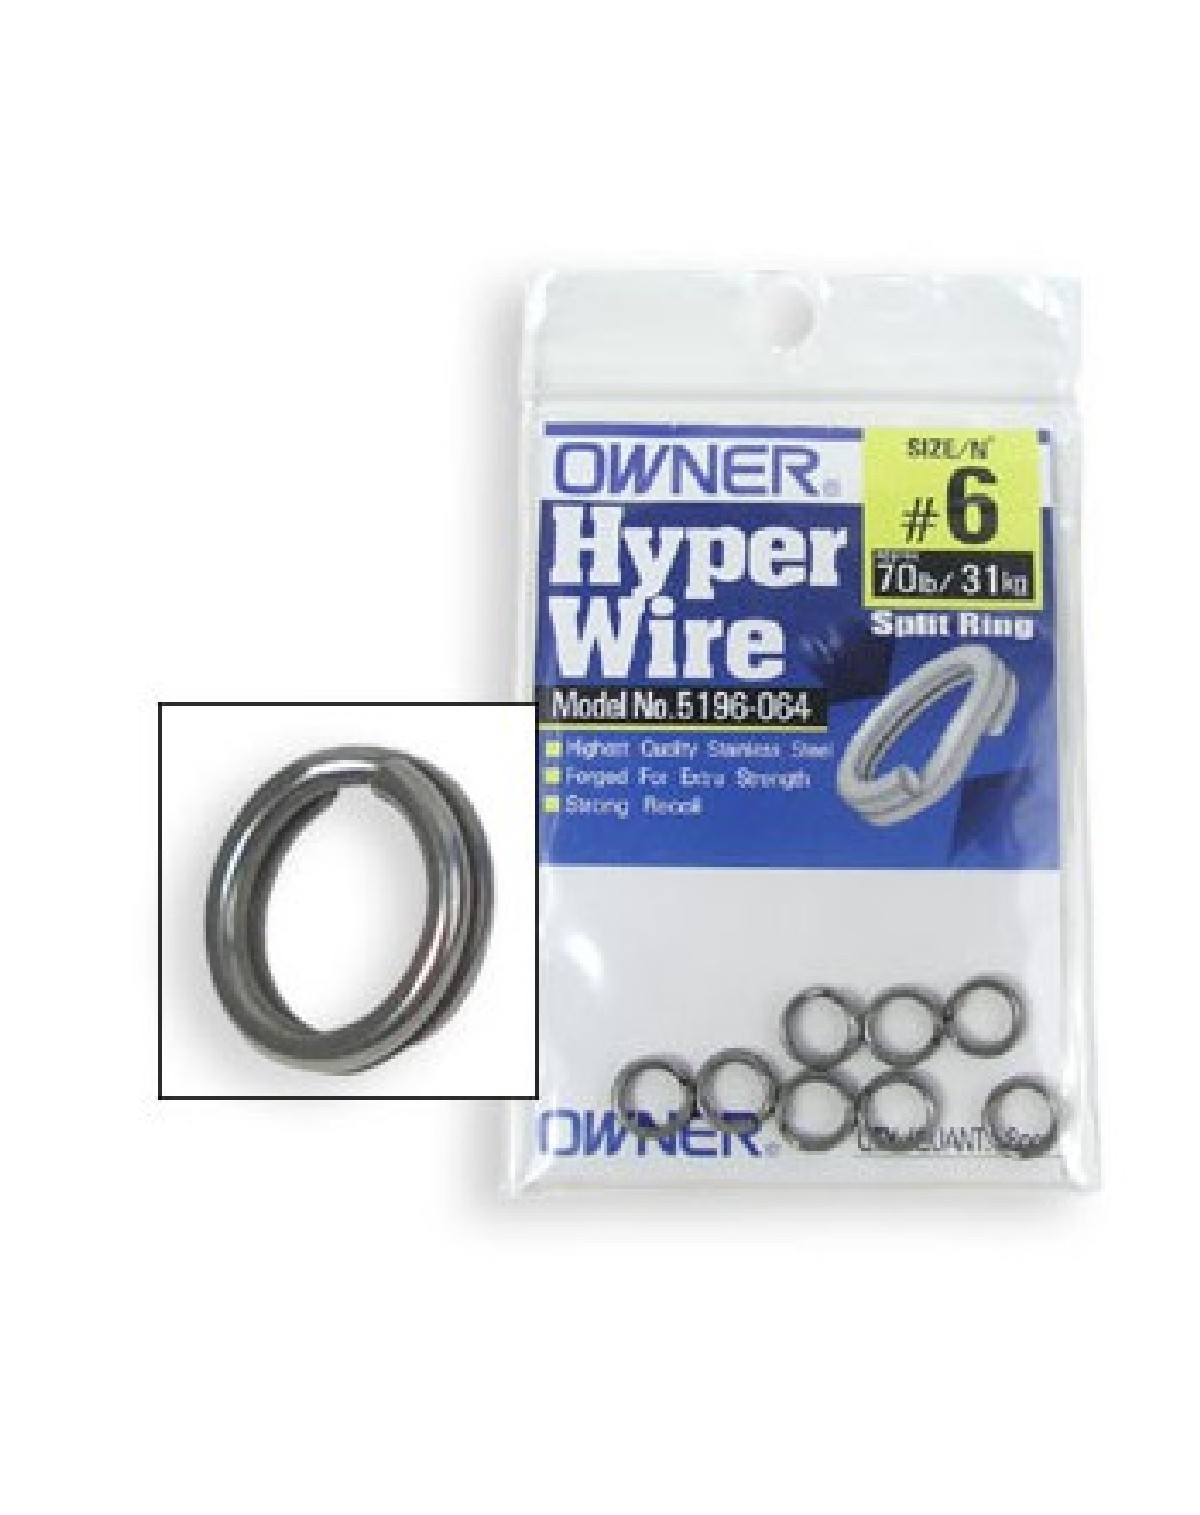 Owner Hyper wire Splitring 8   7st. 120lb/54kg